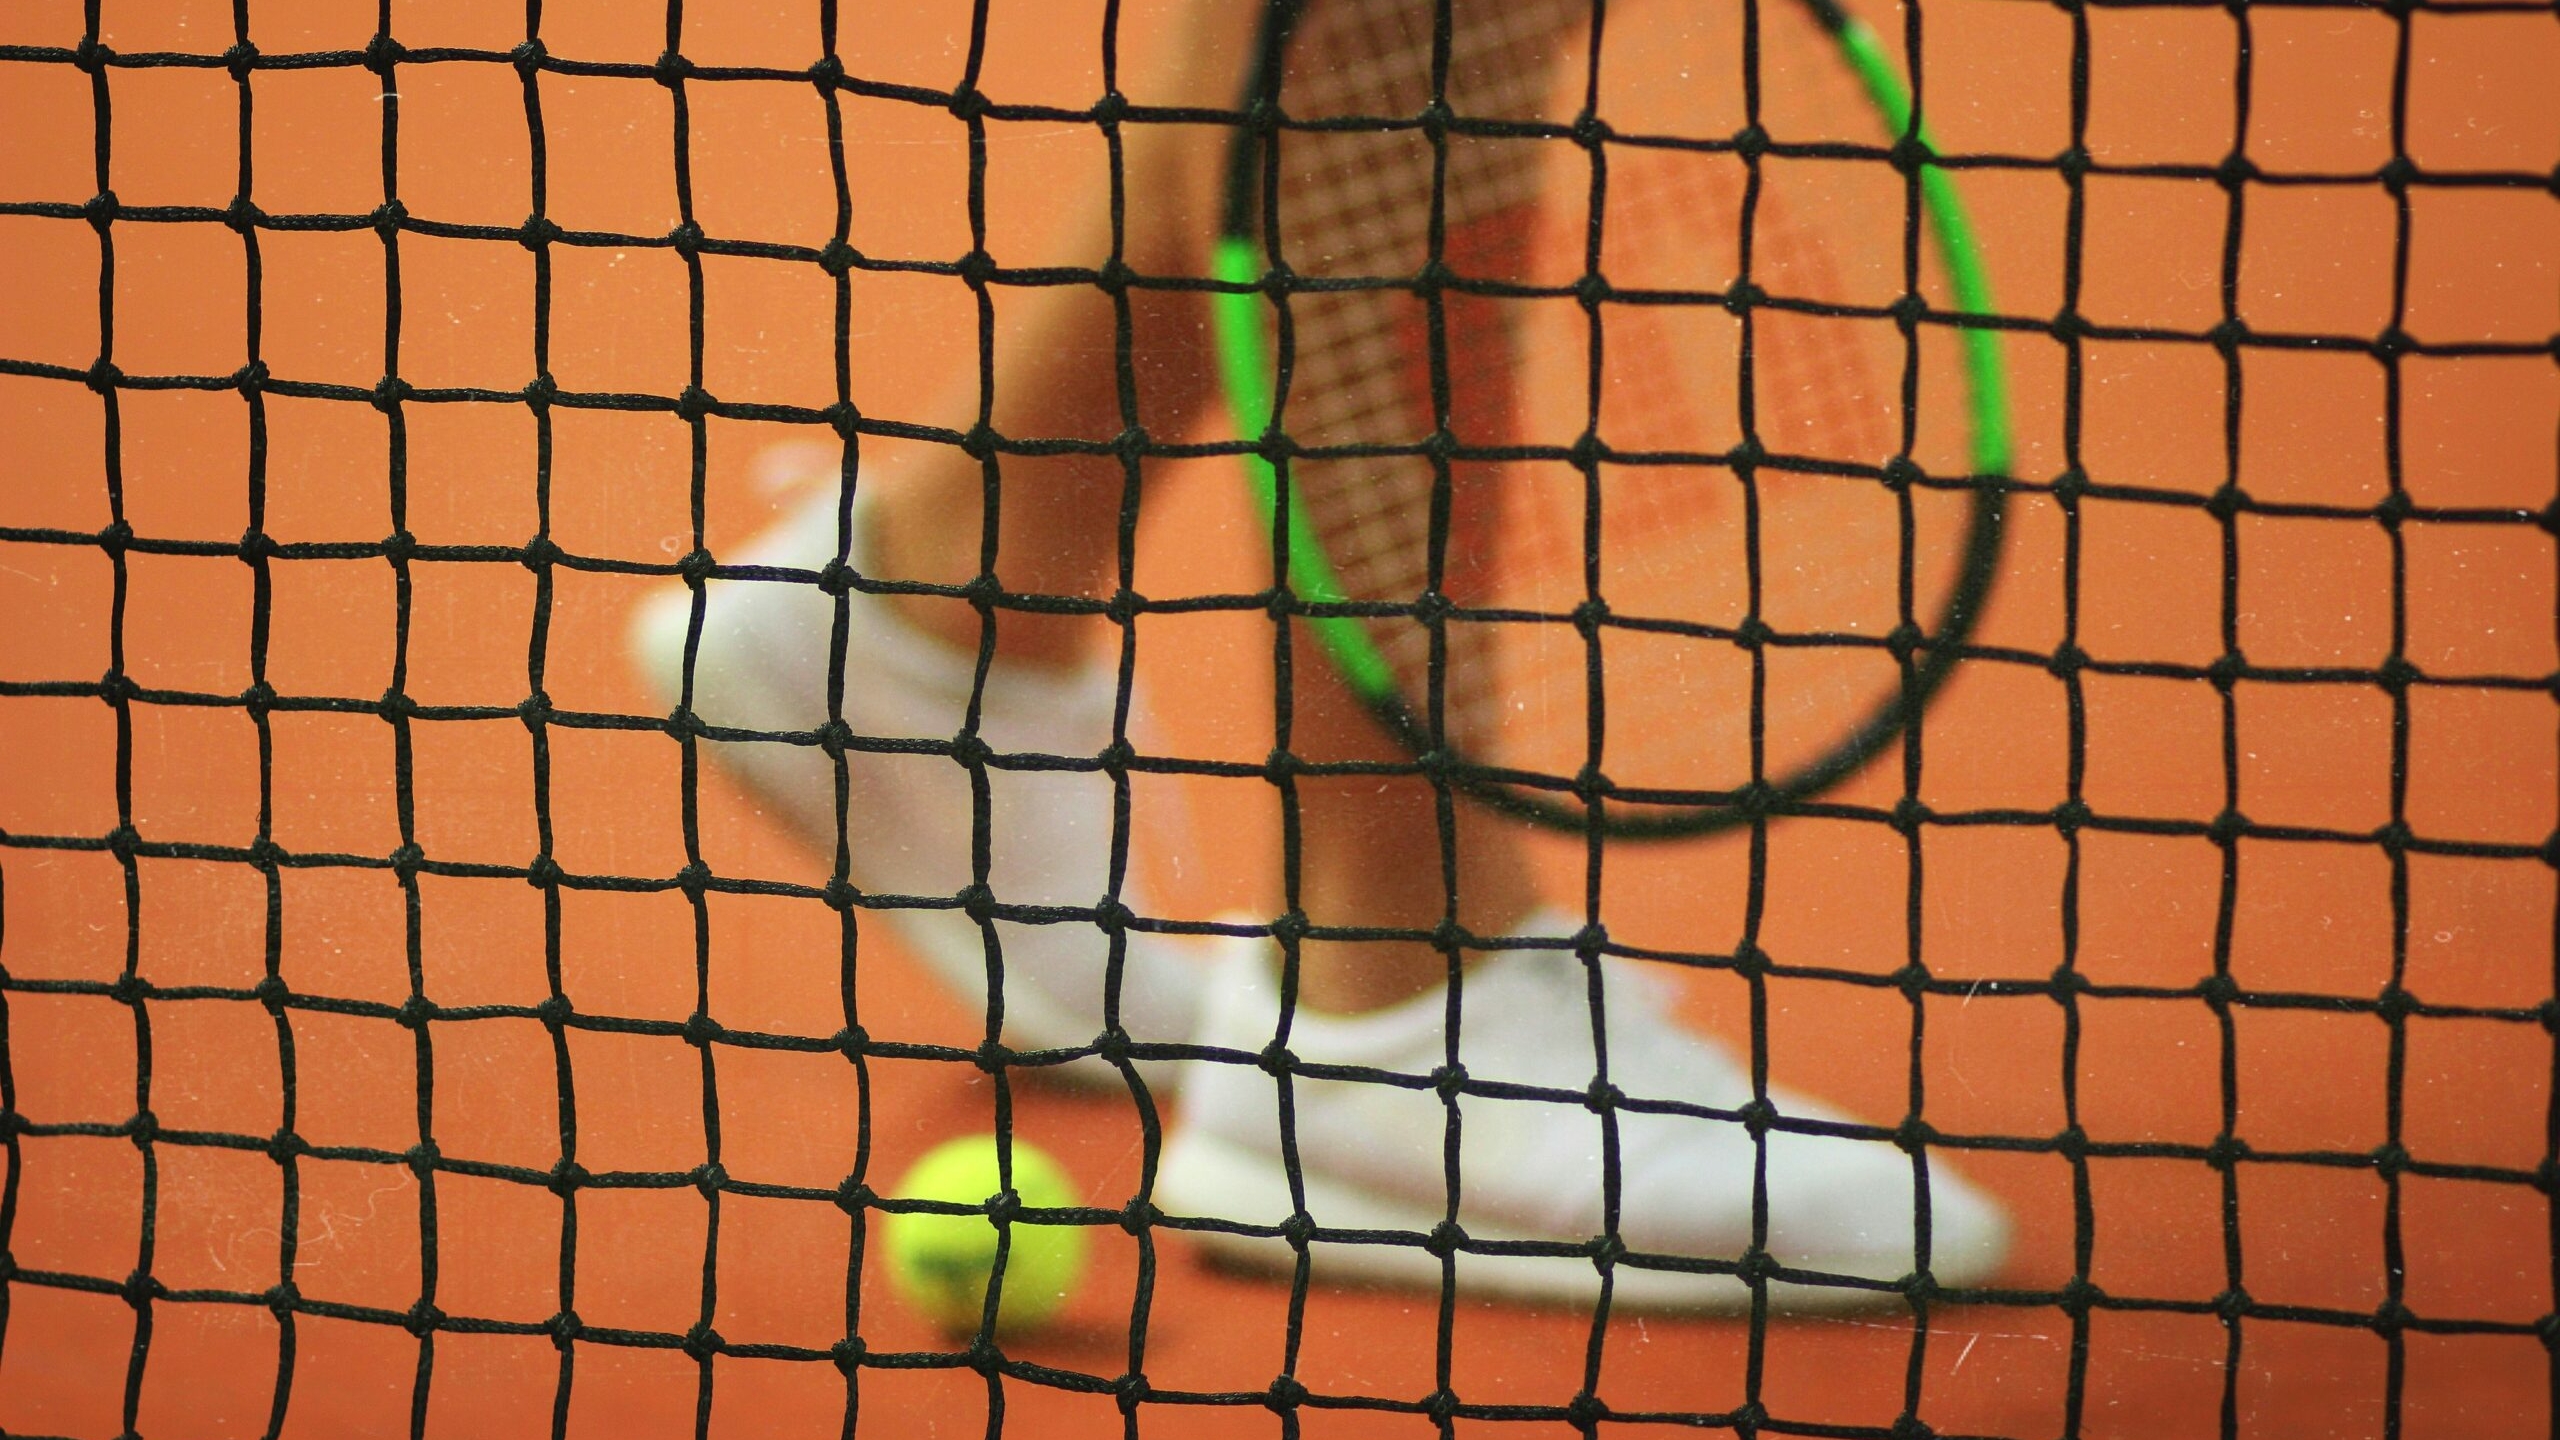 Итальянская теннисистка Джорджи покинула арендованную виллу, прихватив антиквариат на 100 тысяч евро